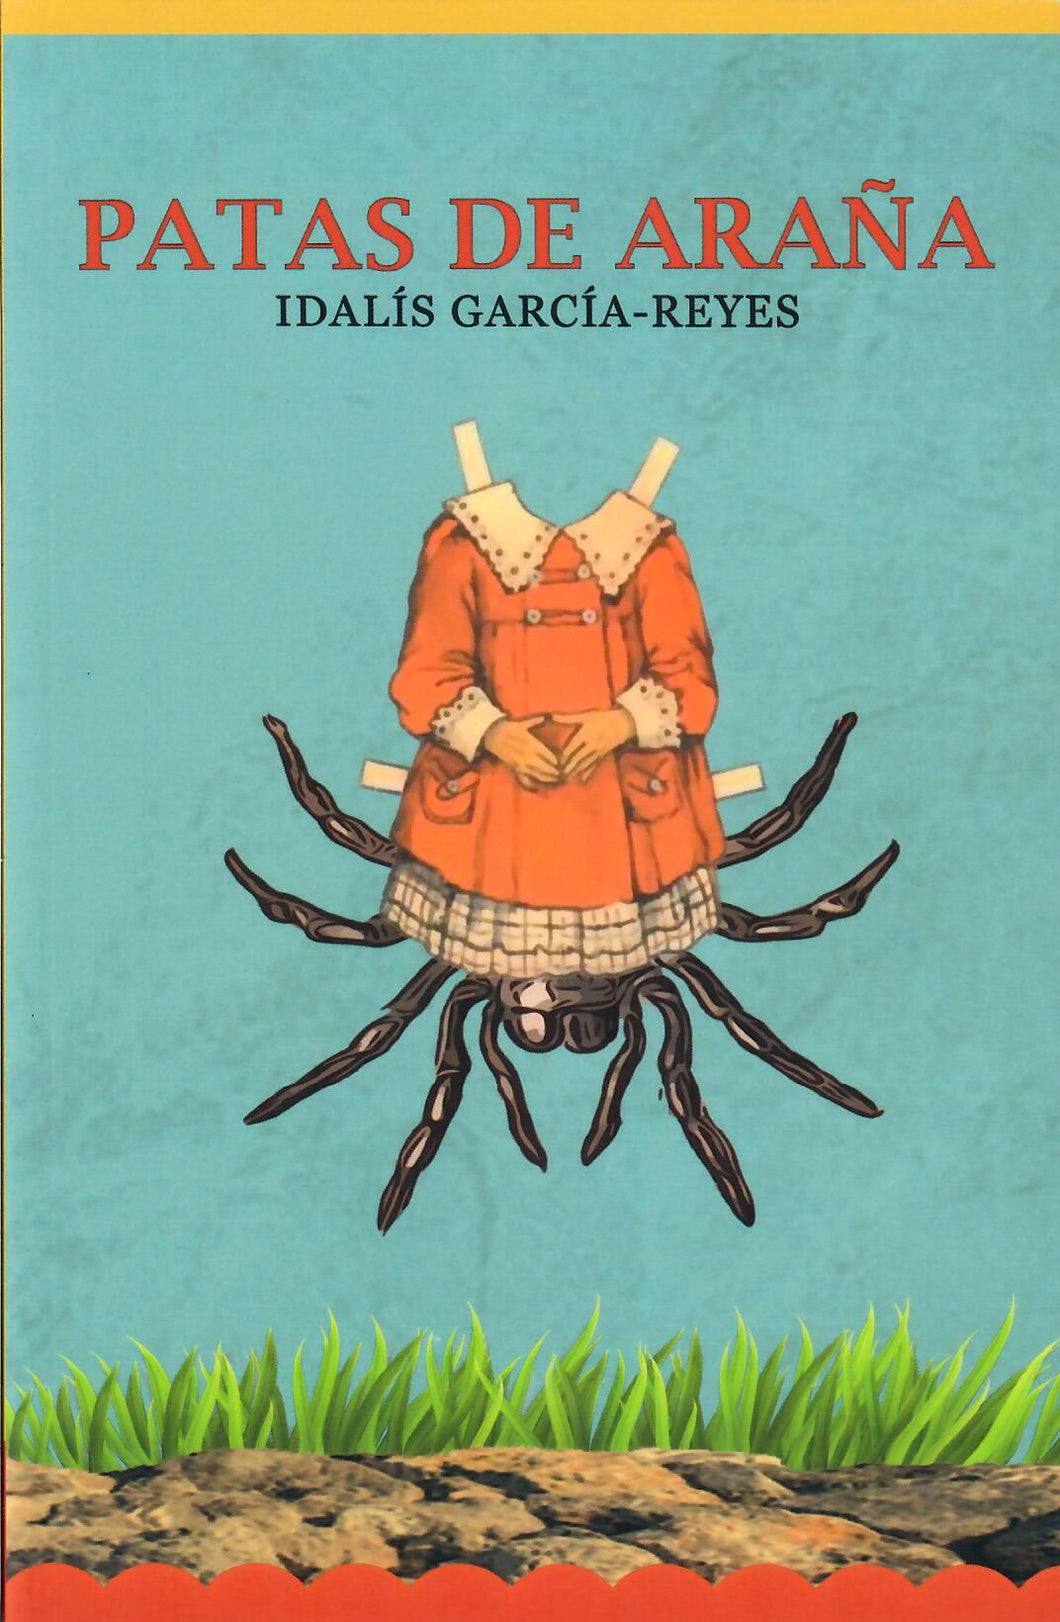 PATAS DE ARAÑA - Idalís García-Reyes